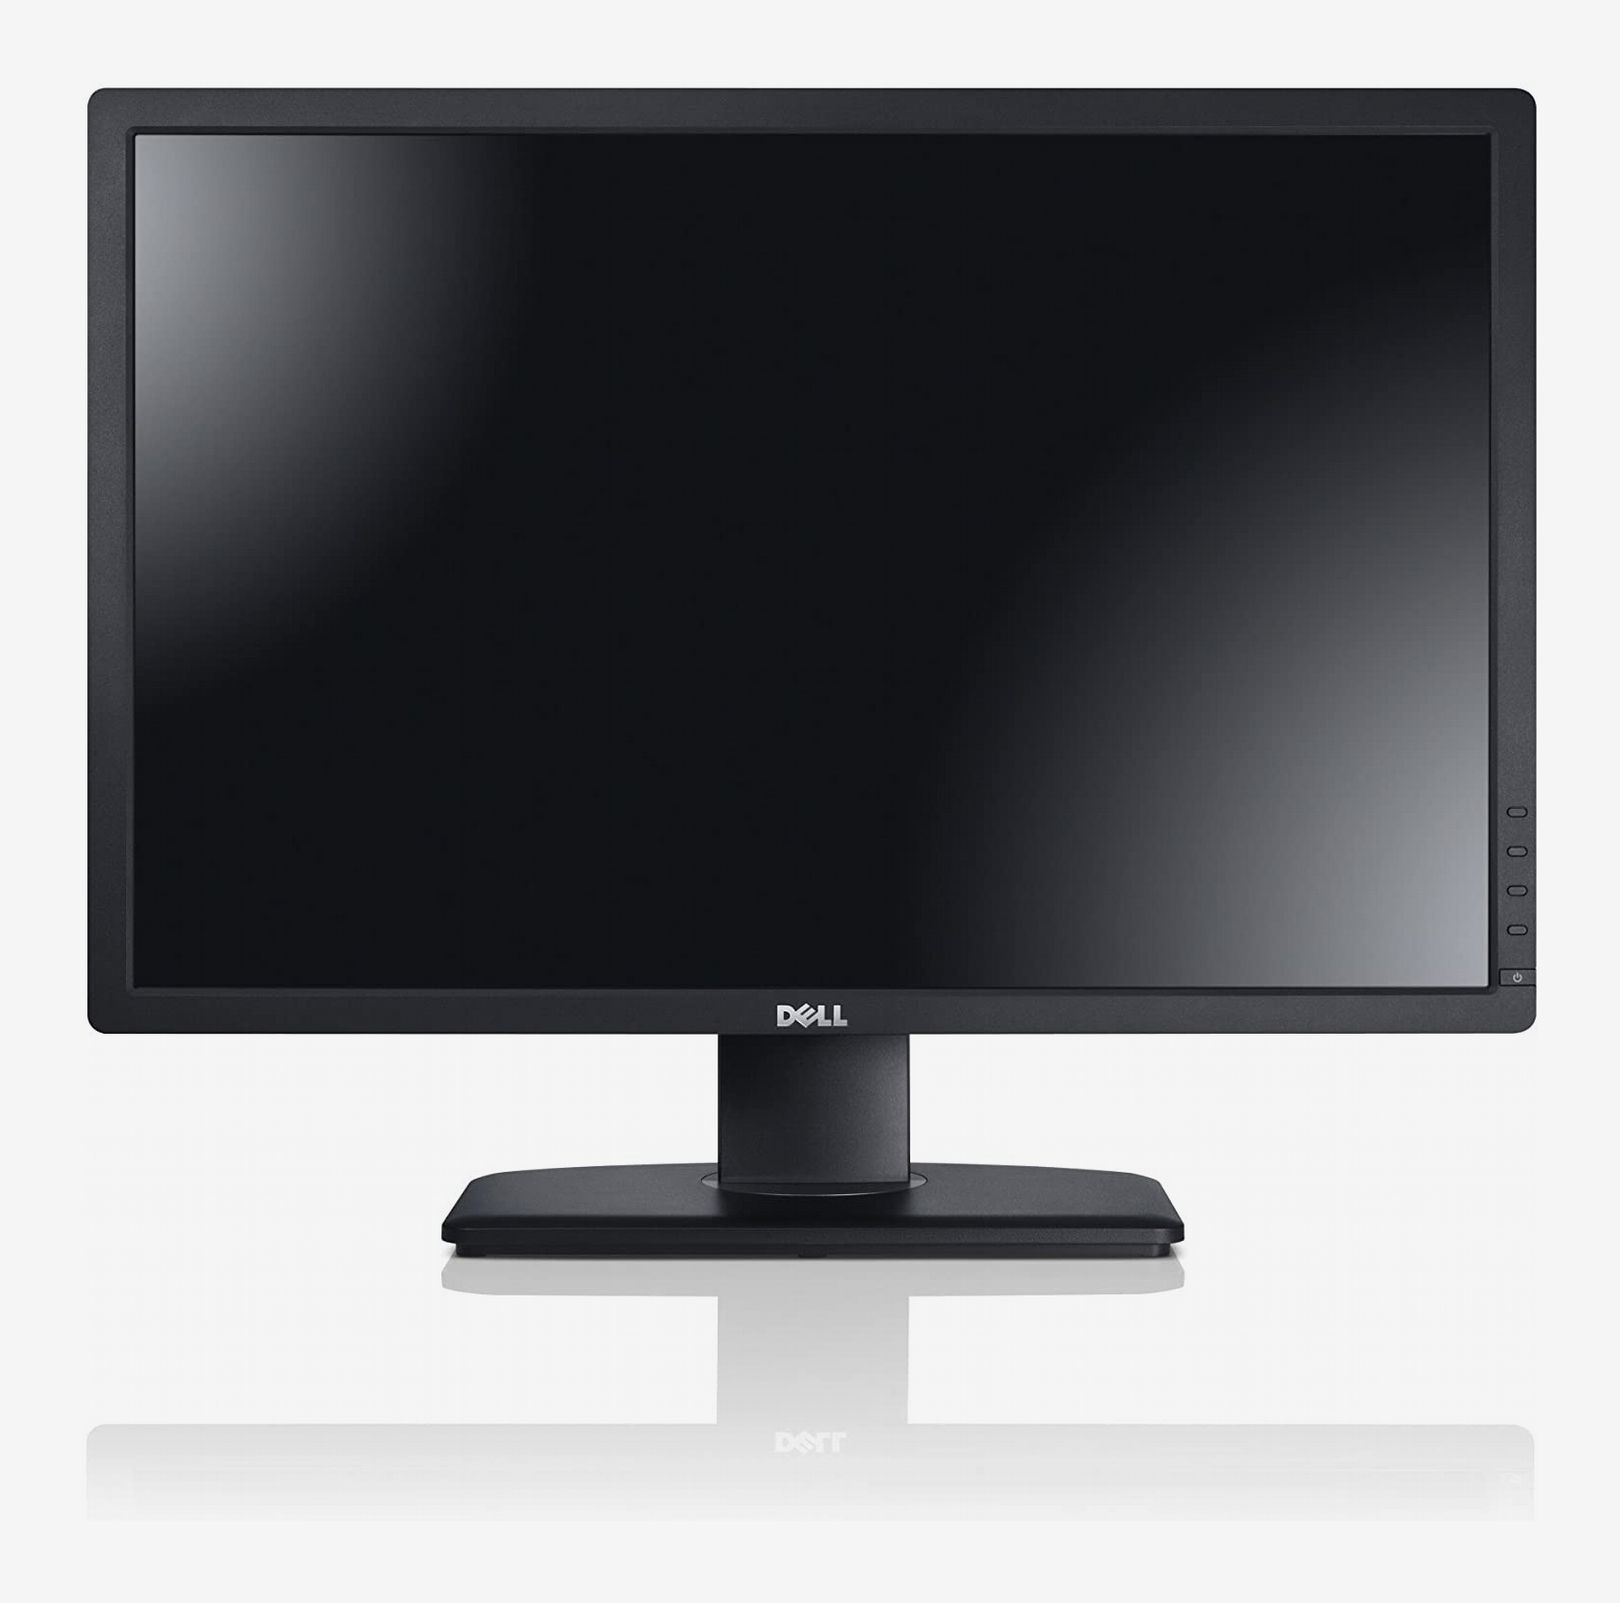 monitor computer